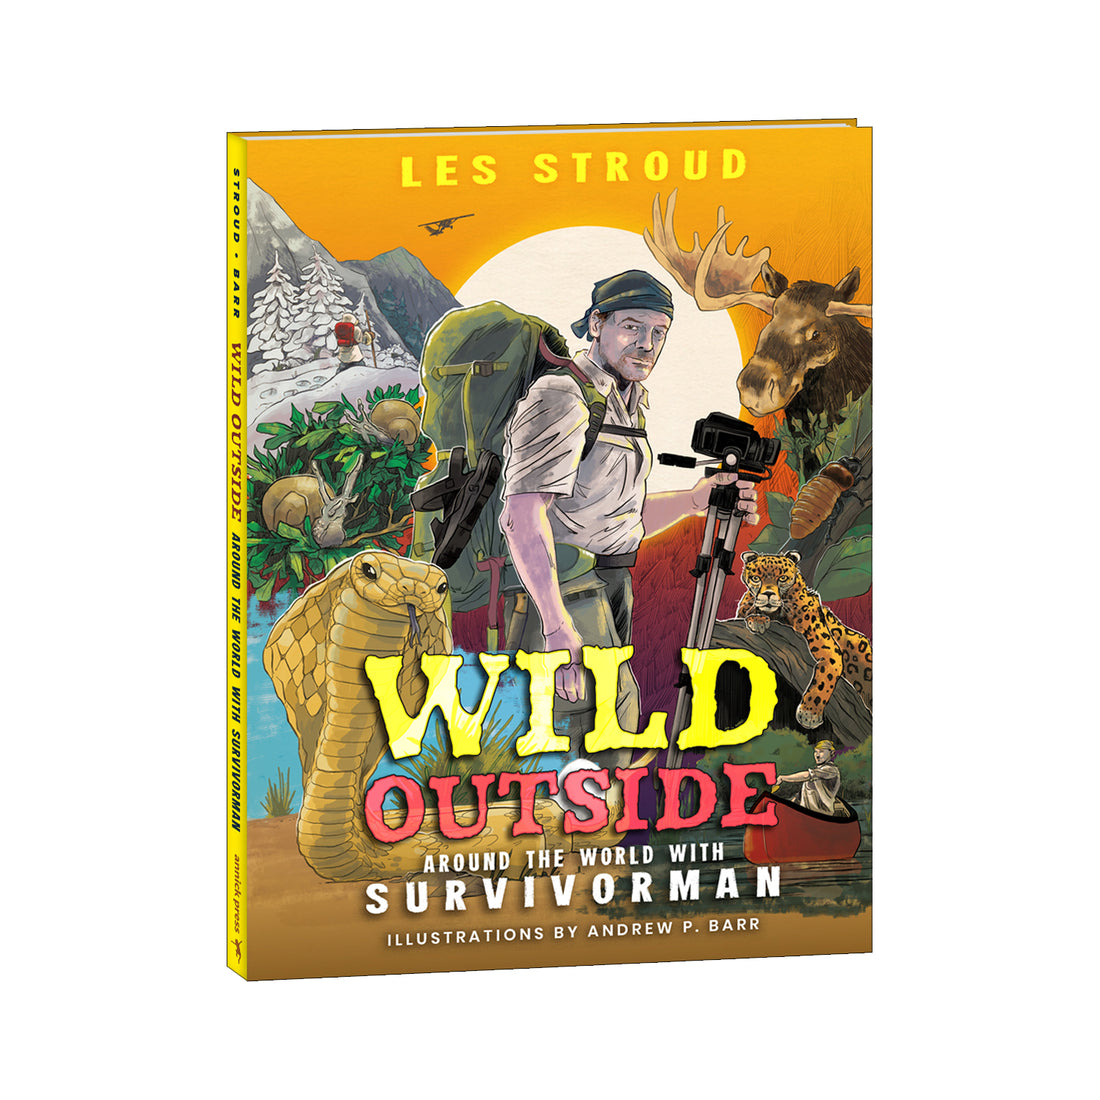 Survivorman - WILD OUTSIDE - Around the World with Survivorman - Book